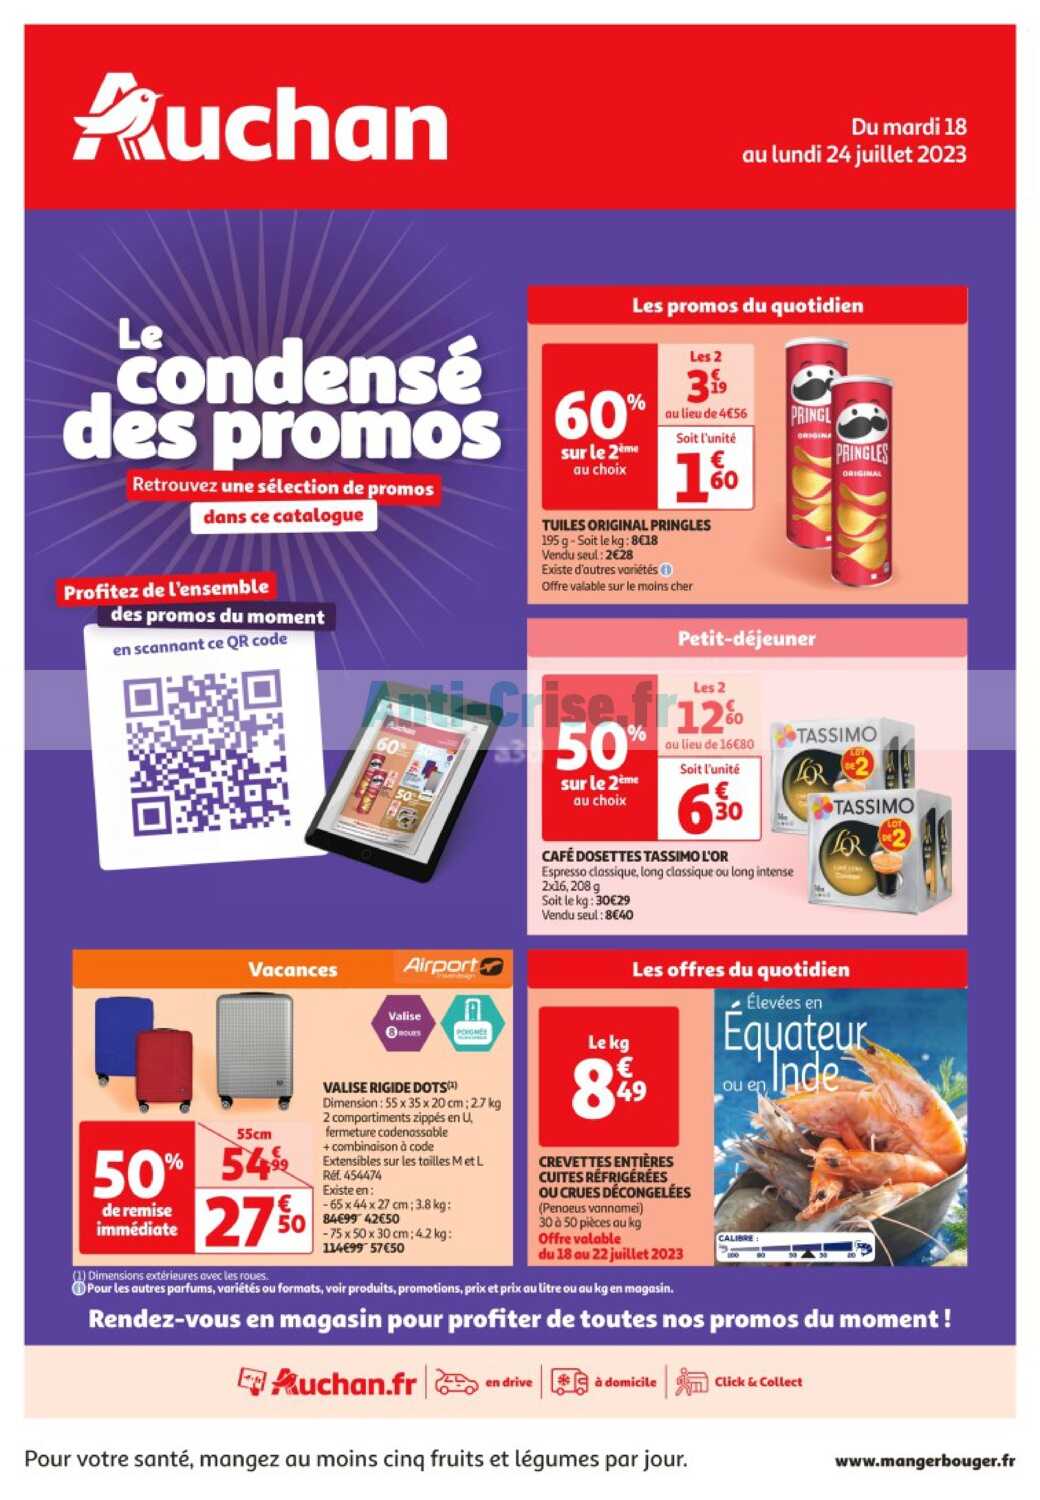 Promo LES MÉMOIRES D'UN CHAT chez Auchan